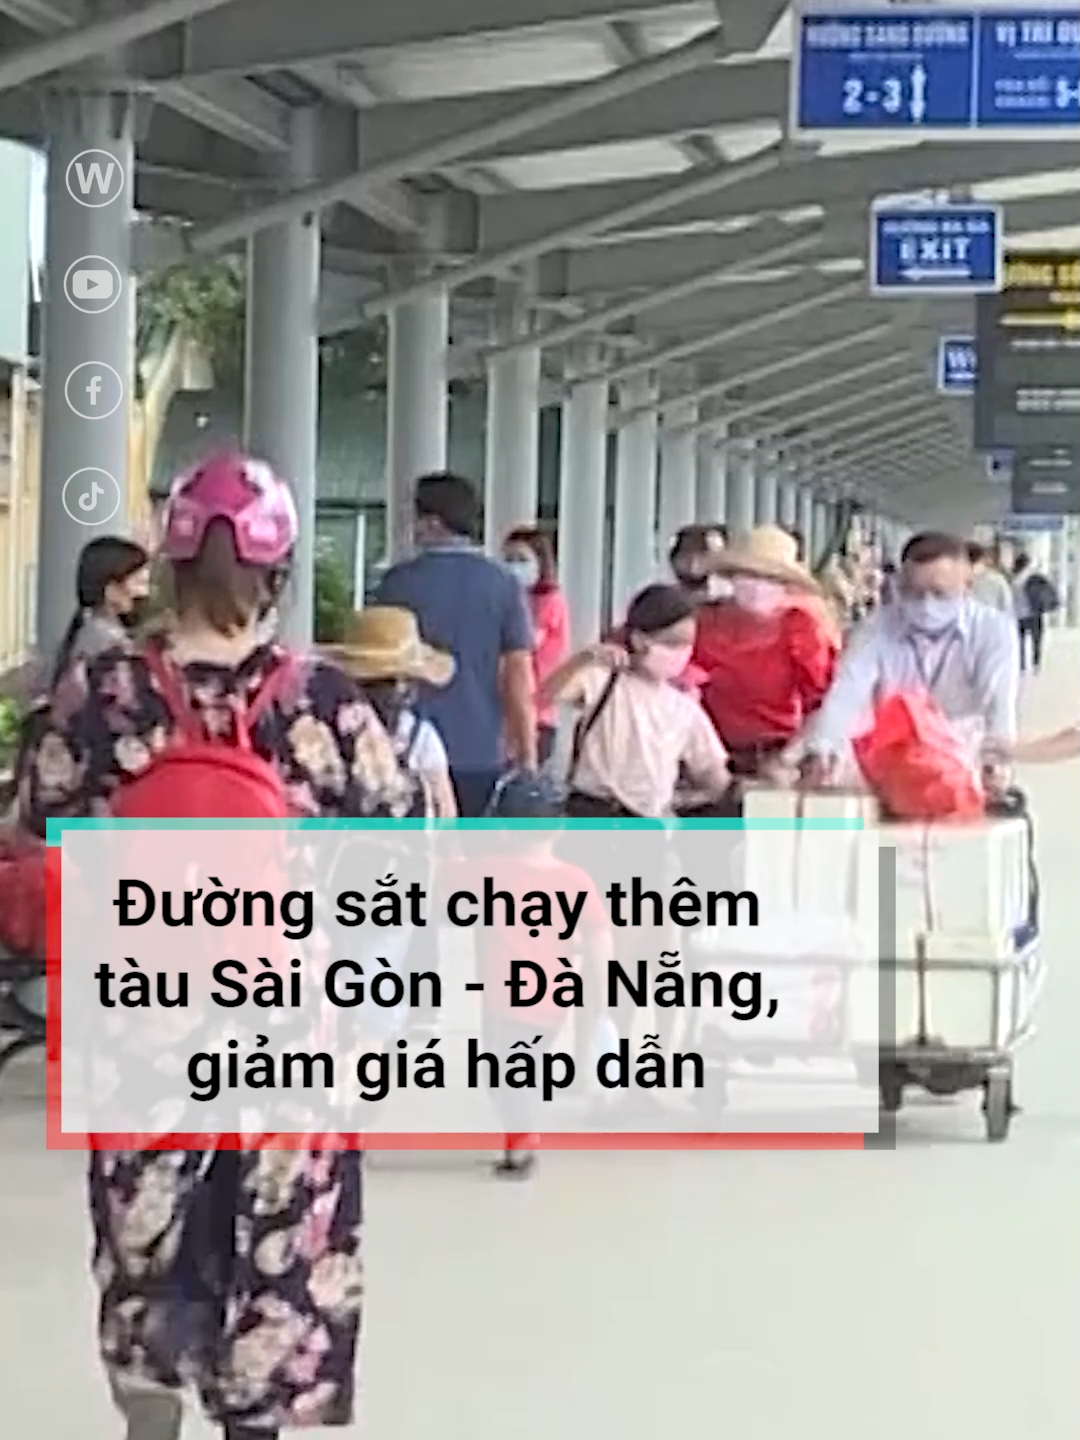 Nhu cầu khách đi tàu tăng cao, ngành đường sắt chạy thêm tàu đoạn Sài Gòn - Đà Nẵng, ngành đường sắt cũng đưa ra nhiều khuyến mãi giảm giá hấp dẫn.#duongsat